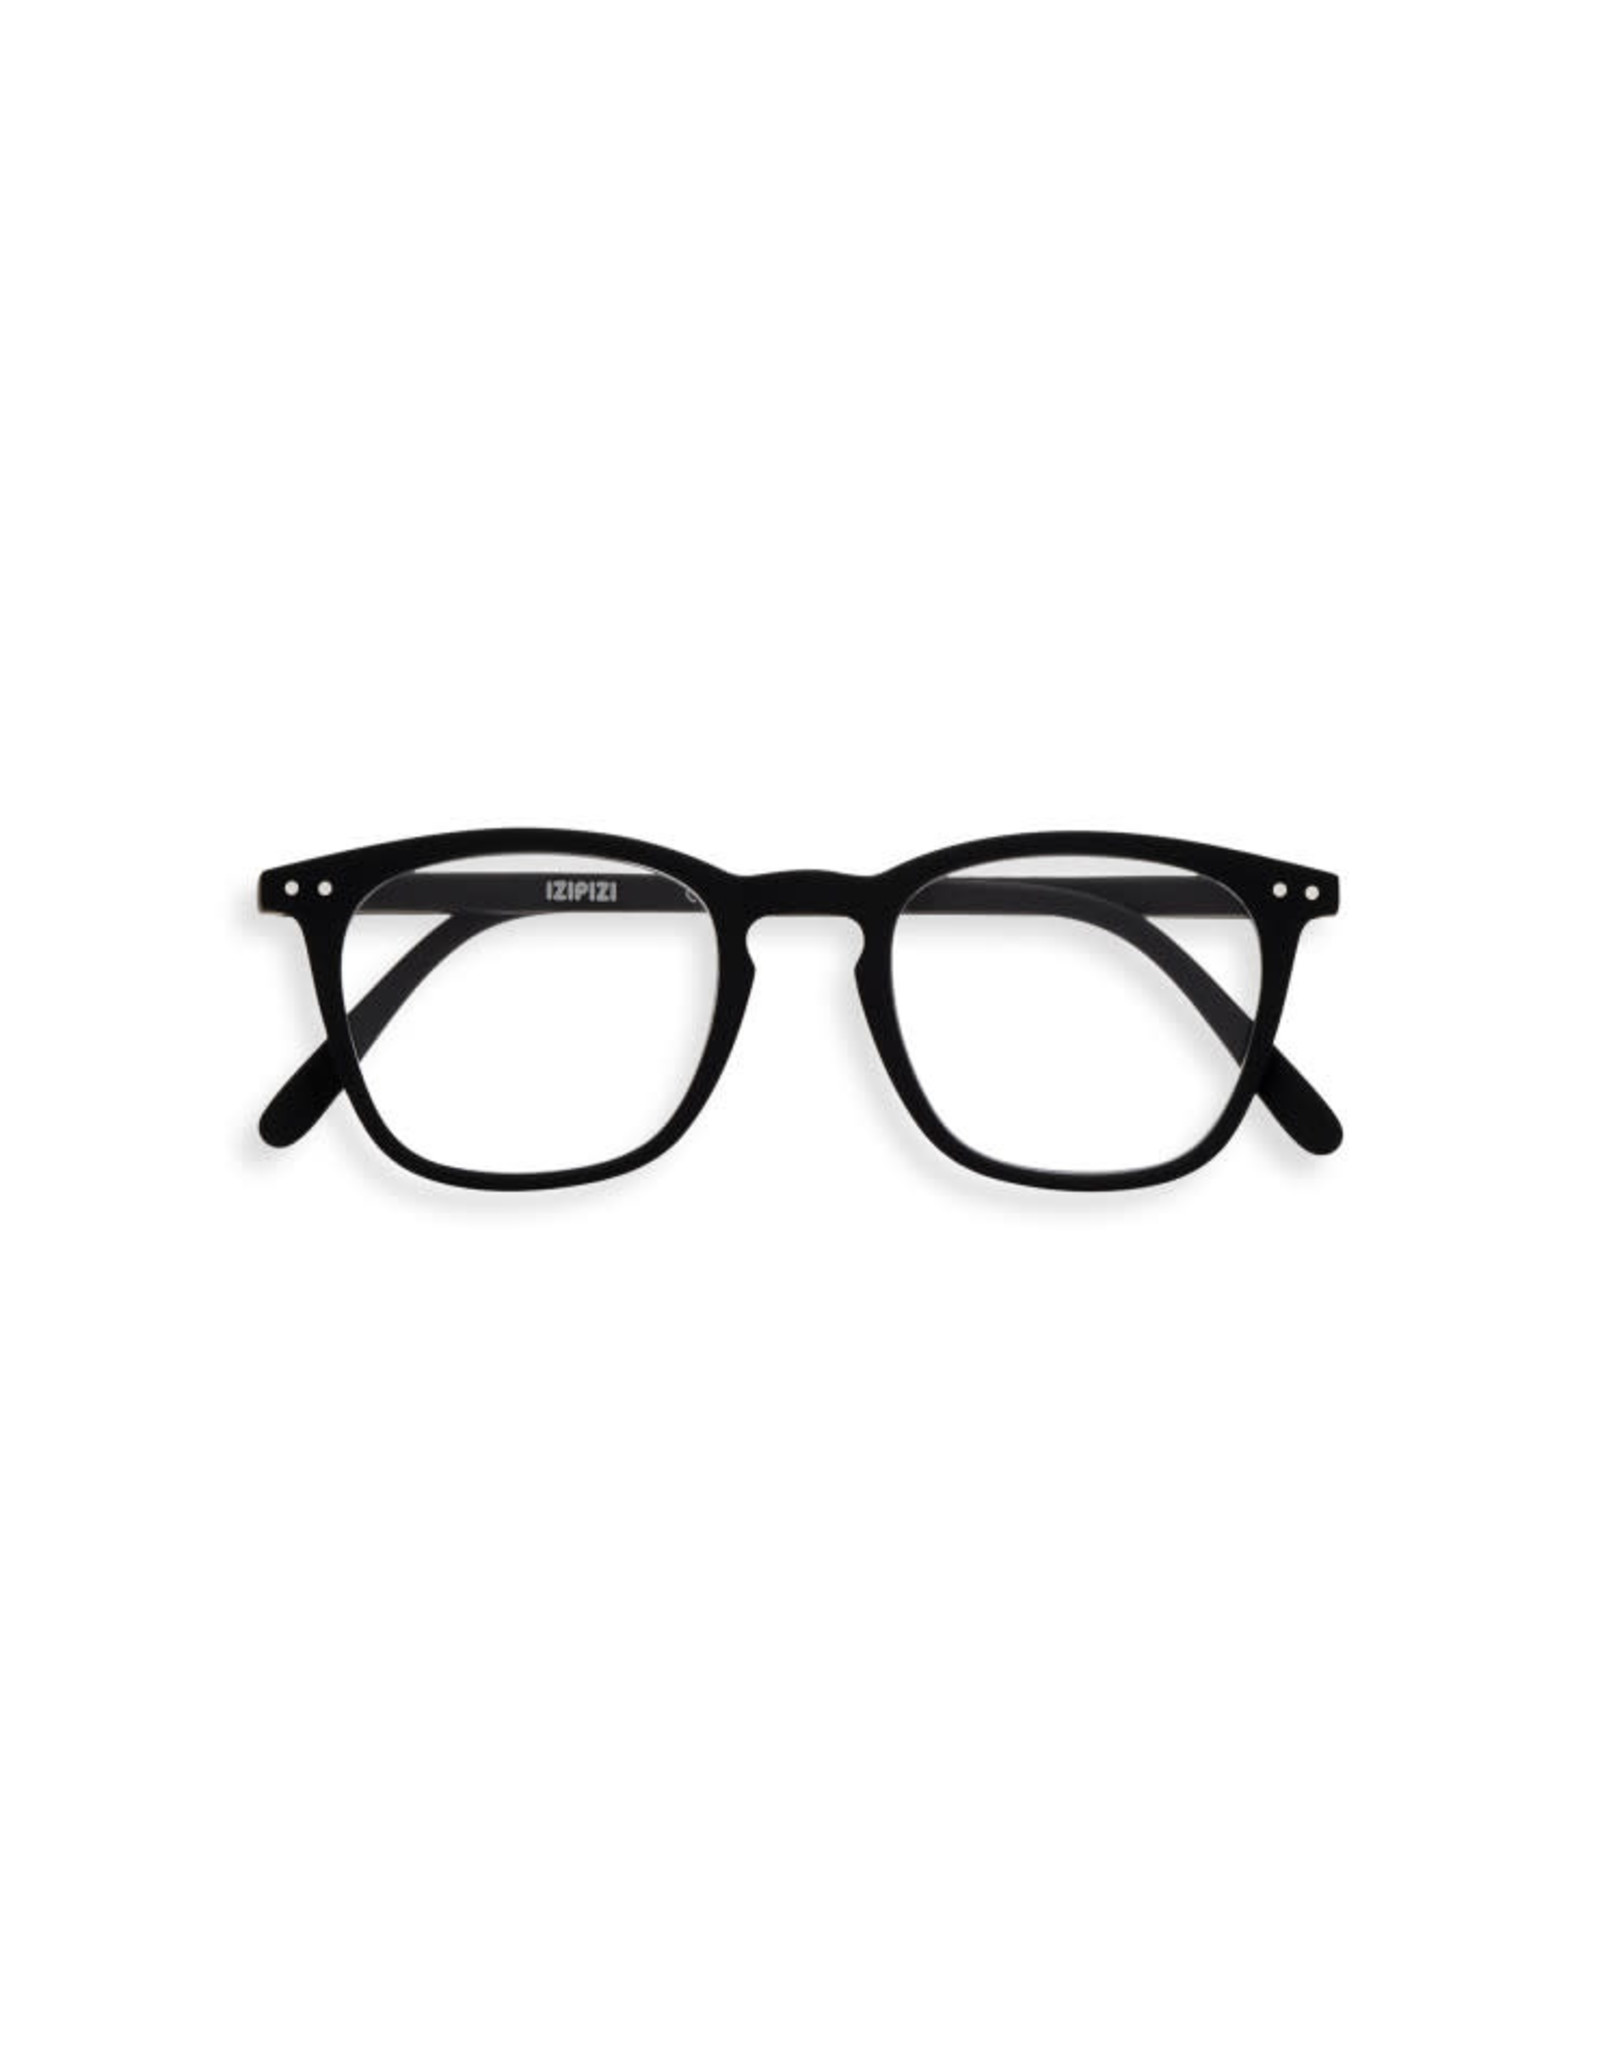 IZIPIZI E Reading Glasses, Black, 1.5